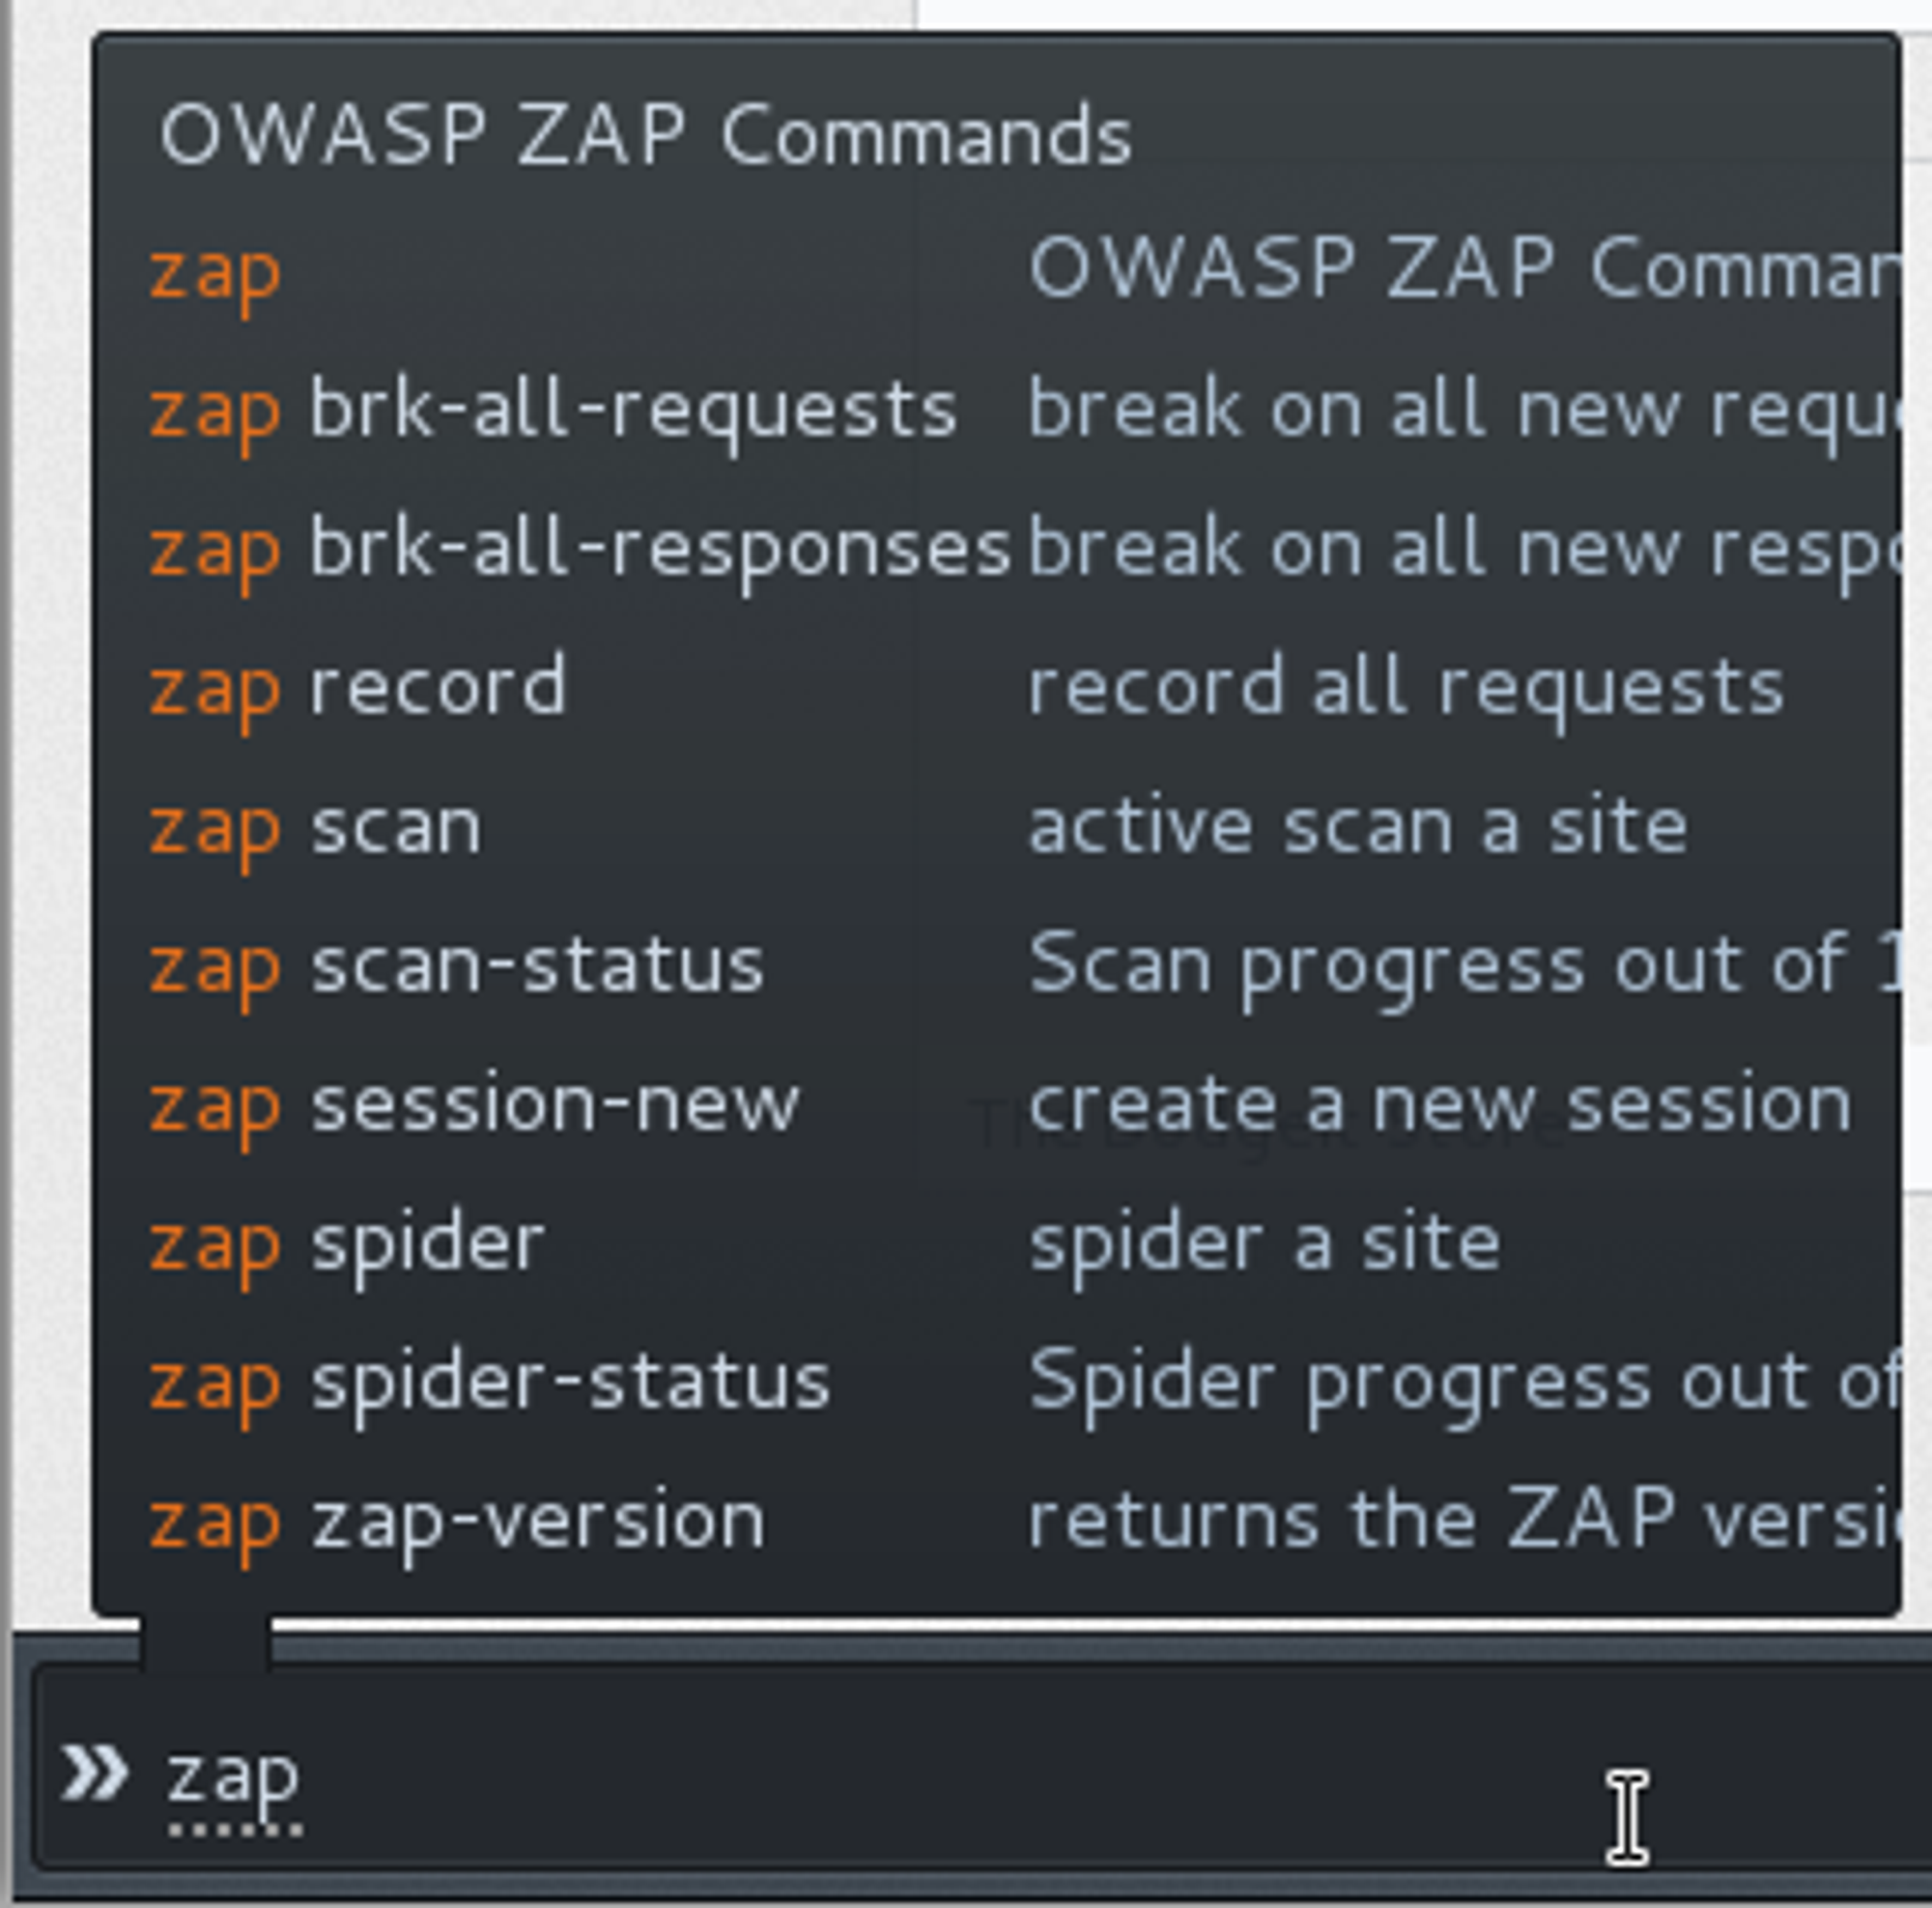 OWASP ZAP-kommandoer gjort tilgjengelige i Firefox via Plug-n-Hack-protokollen.